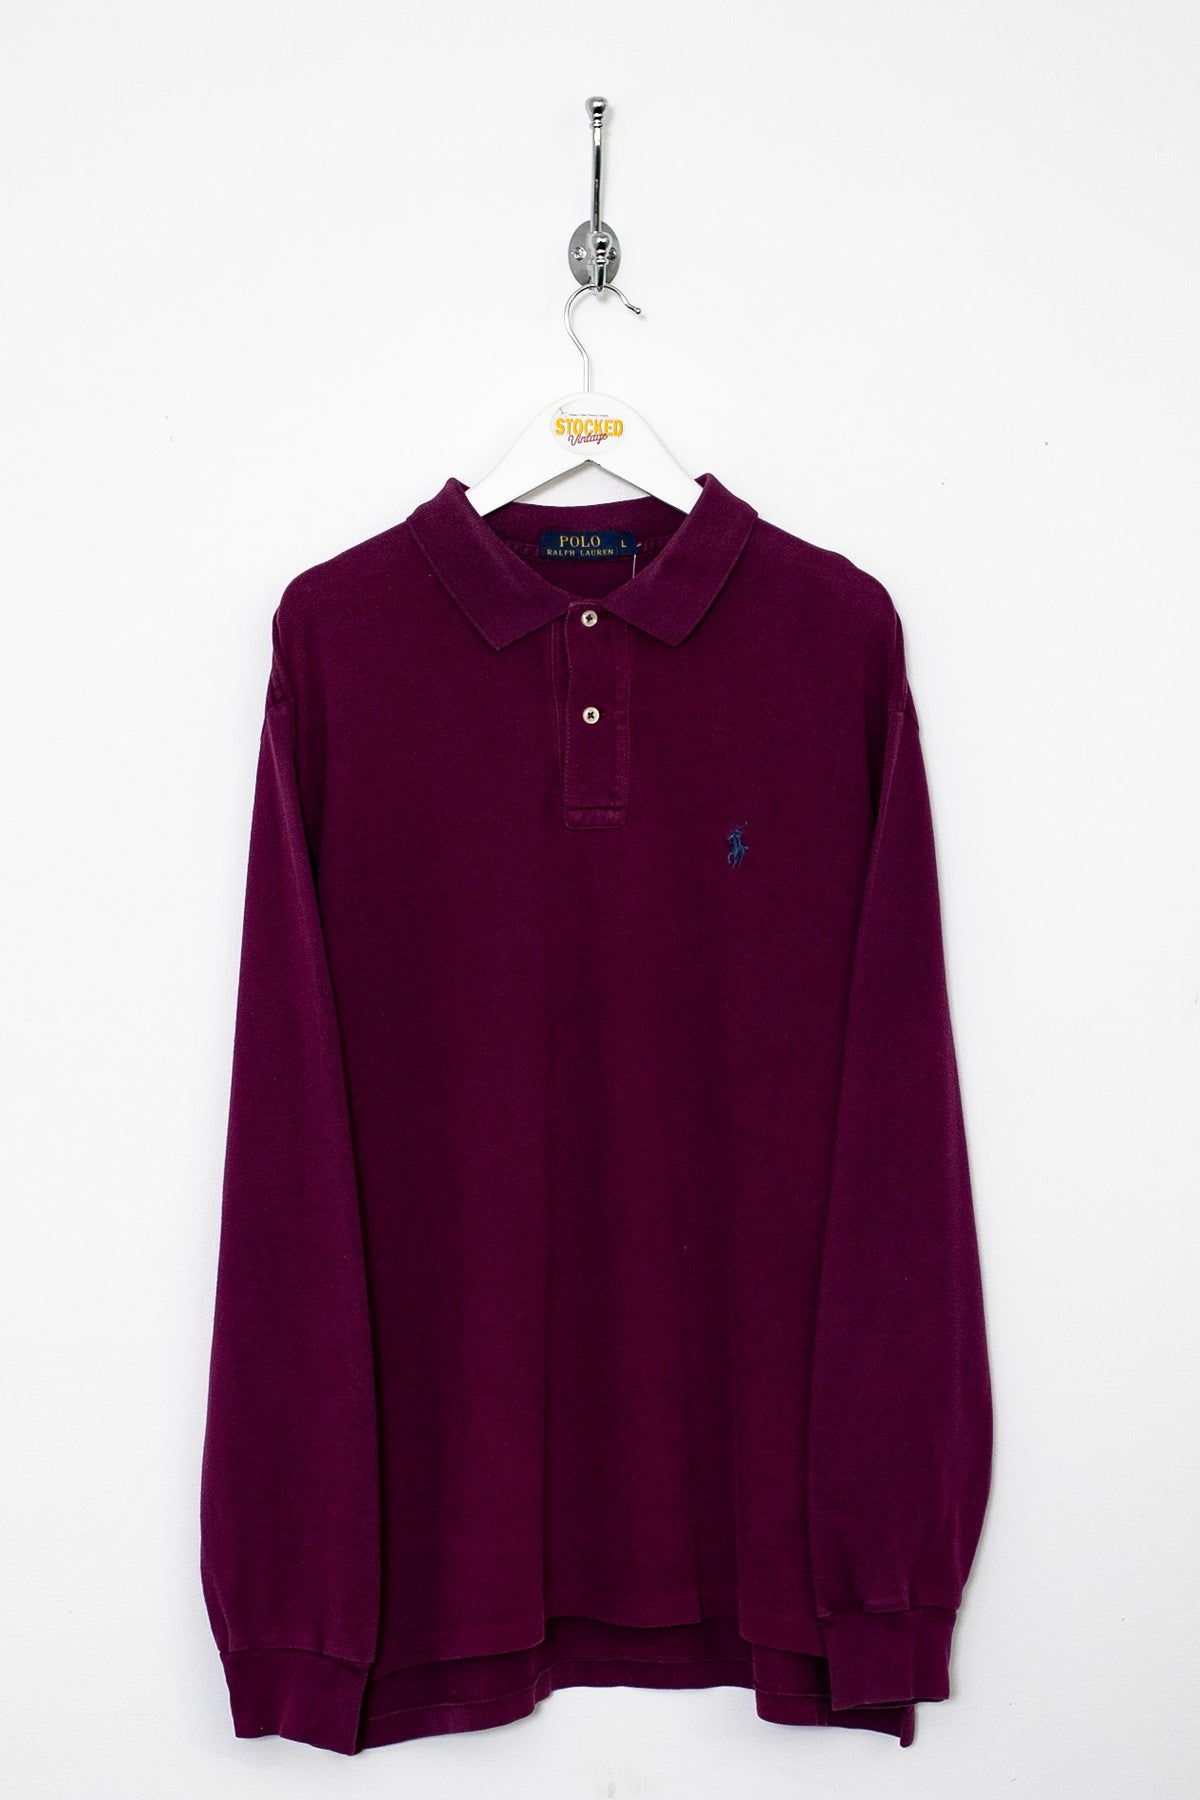 Ralph Lauren Long Sleeve Polo Shirt (L)